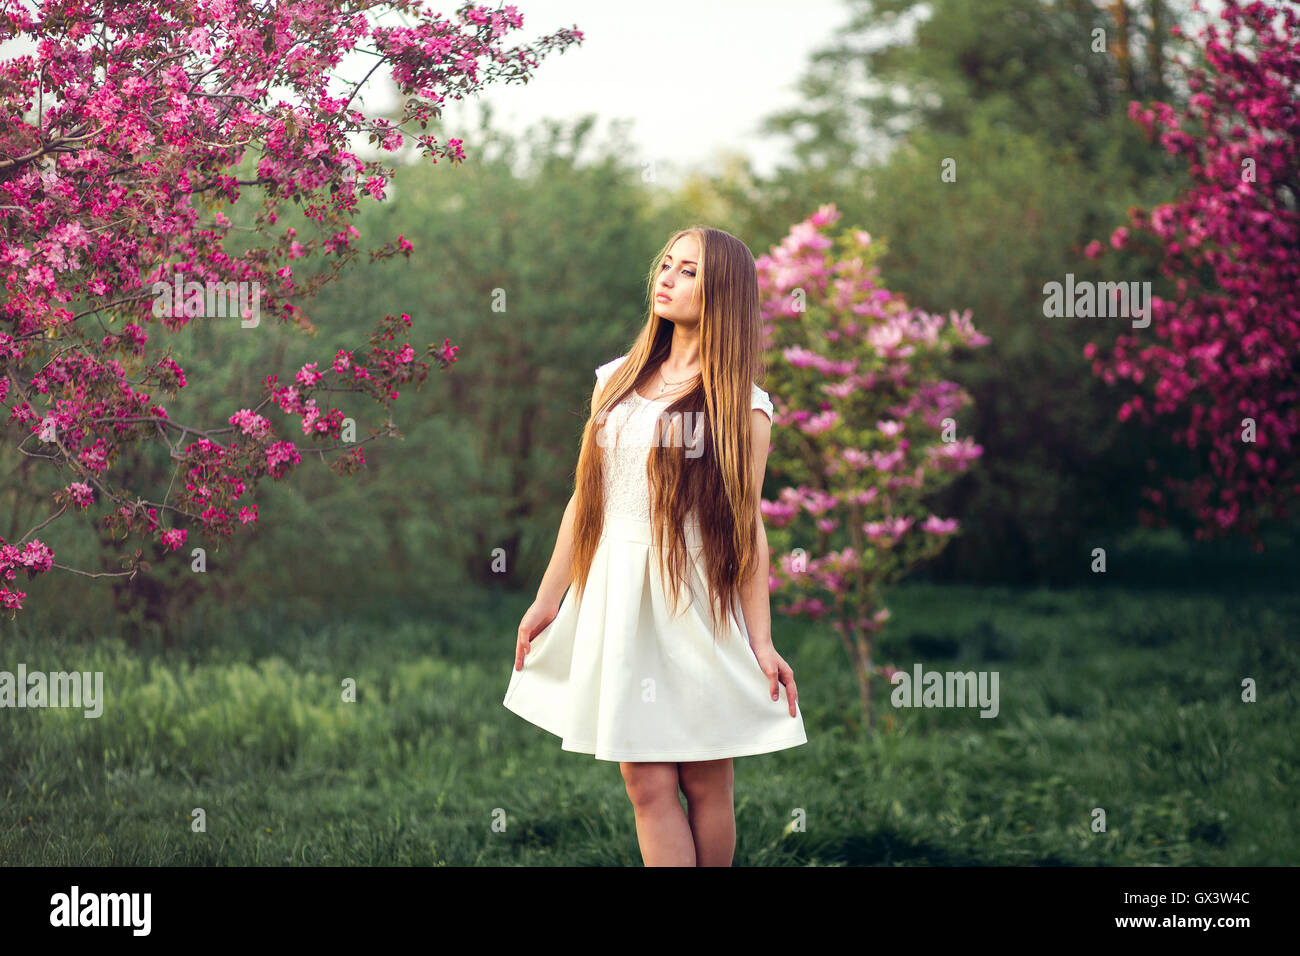 Belle fille blonde en rose pêche et sakura garden. L'extérieur femelle printemps portrait, jeune femme avec du green concept Blossom Park Banque D'Images